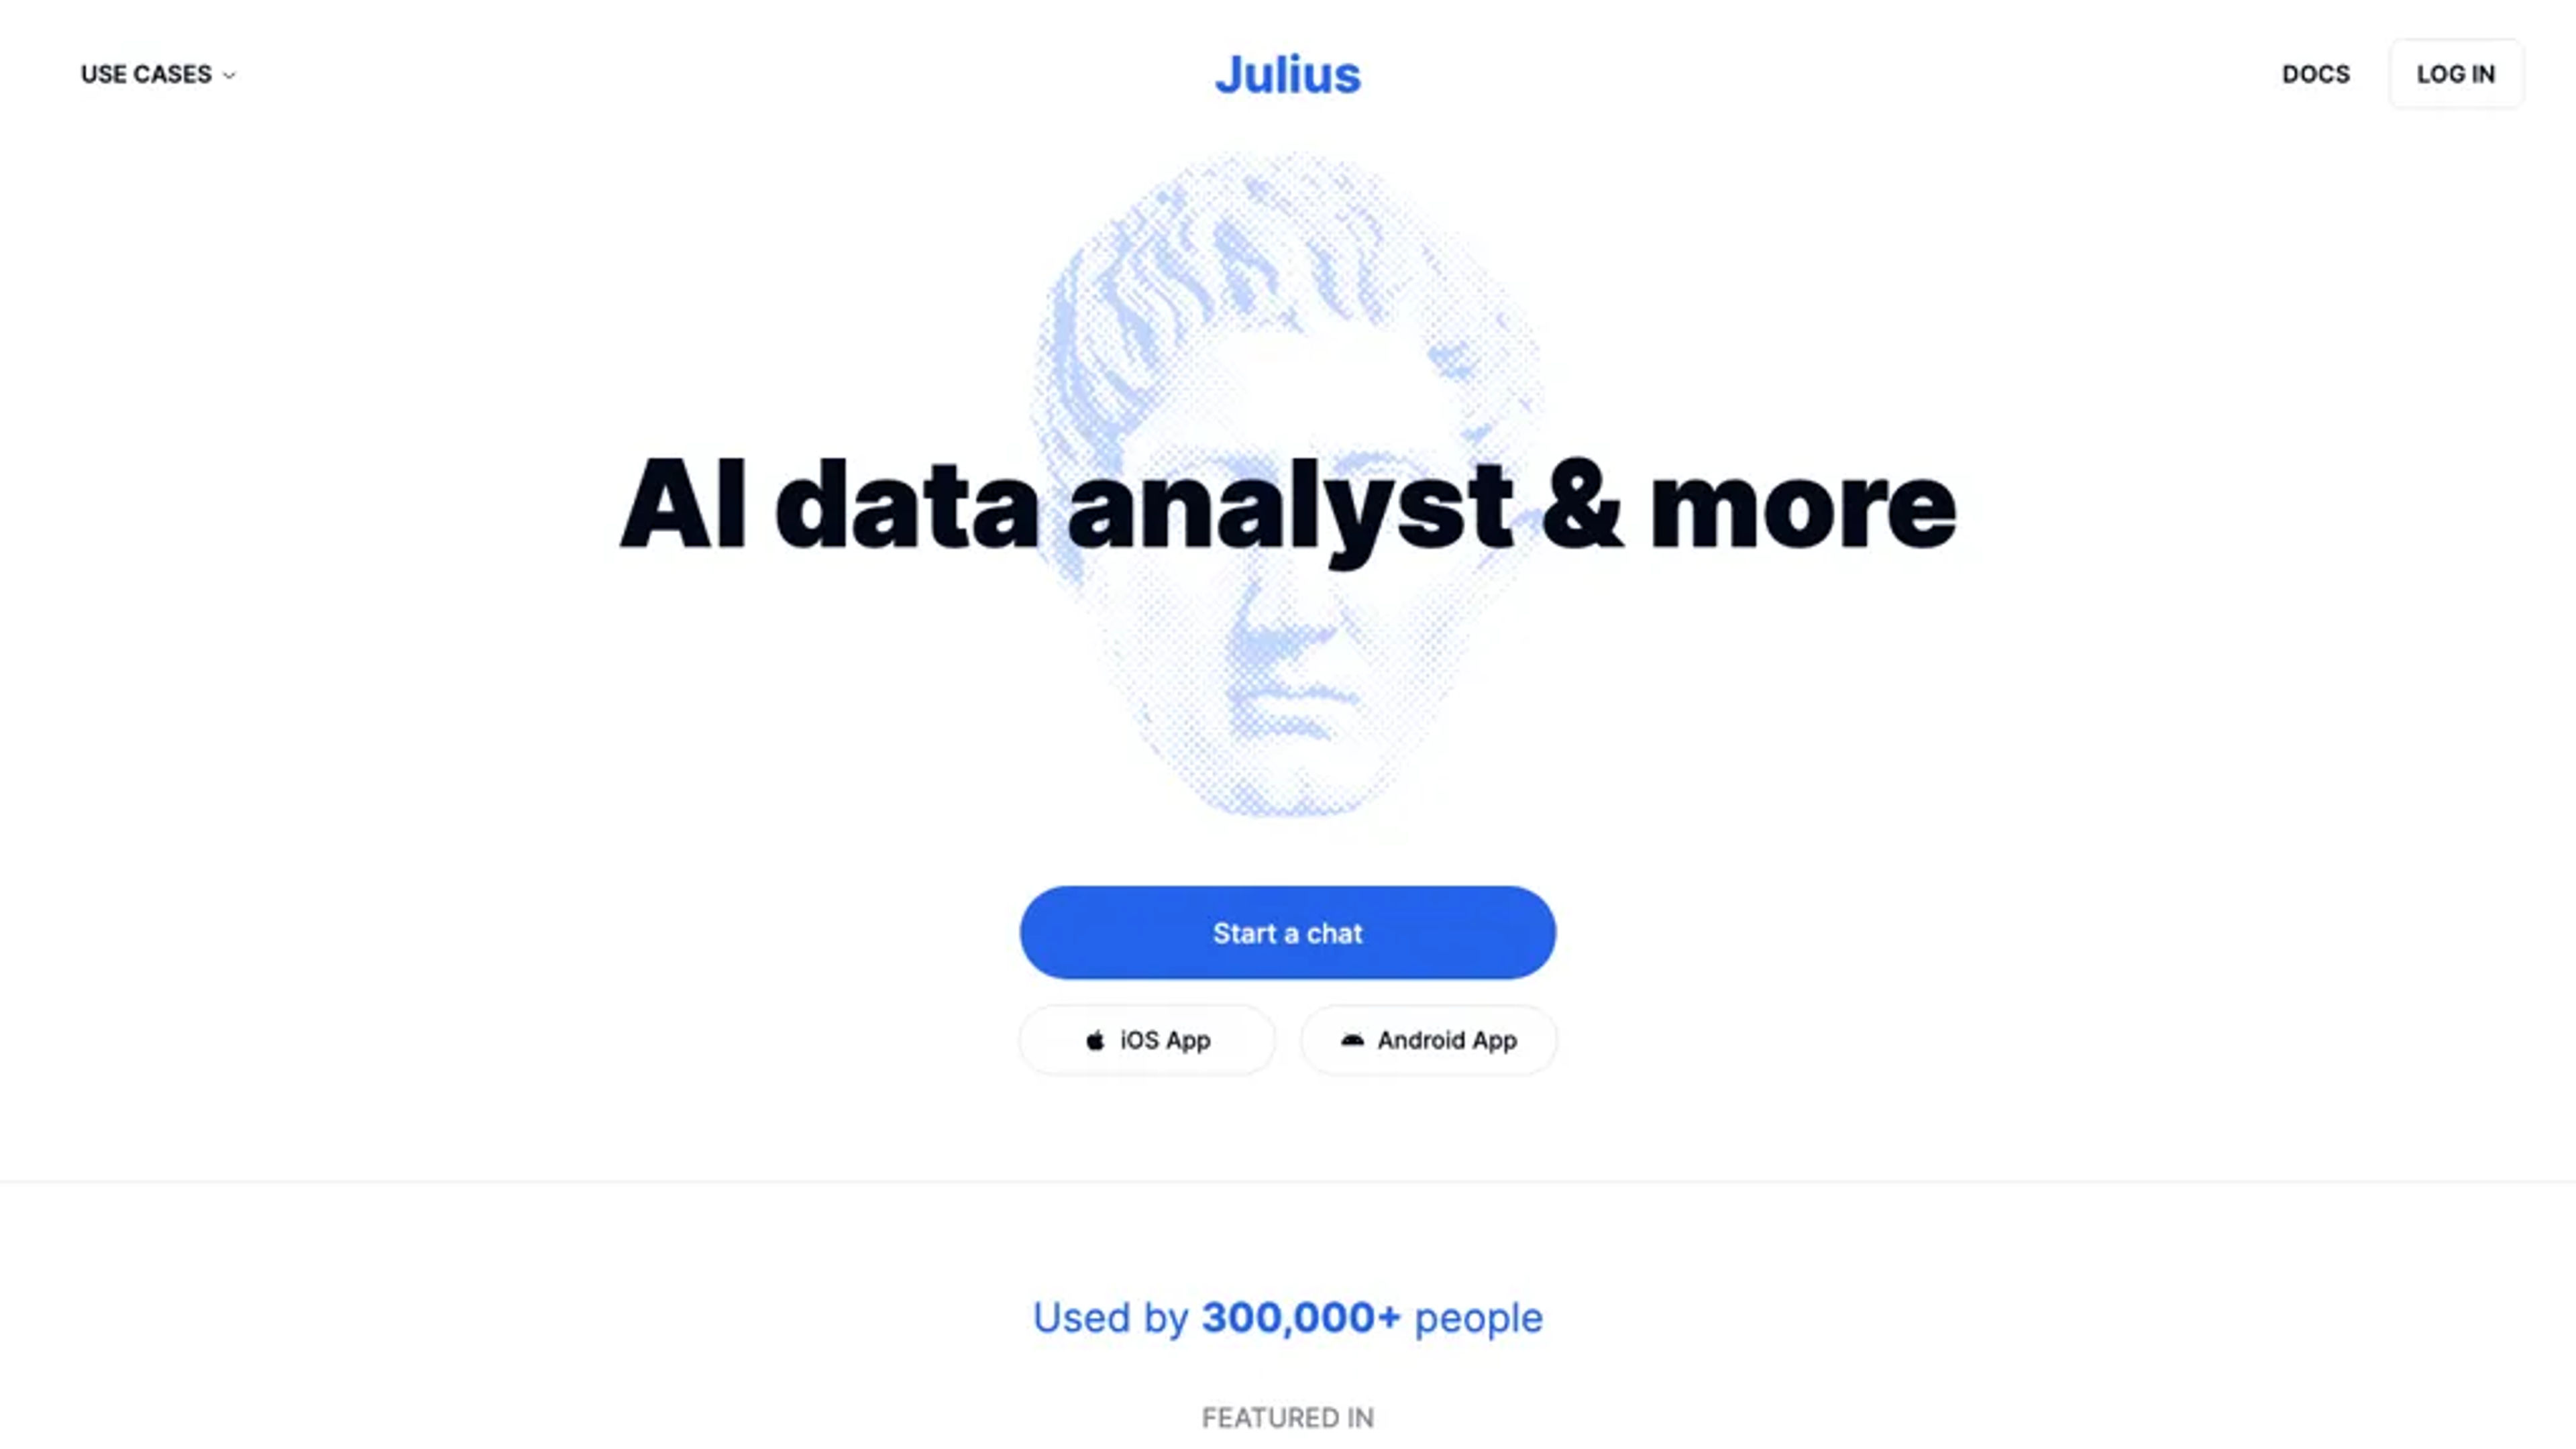 Julius